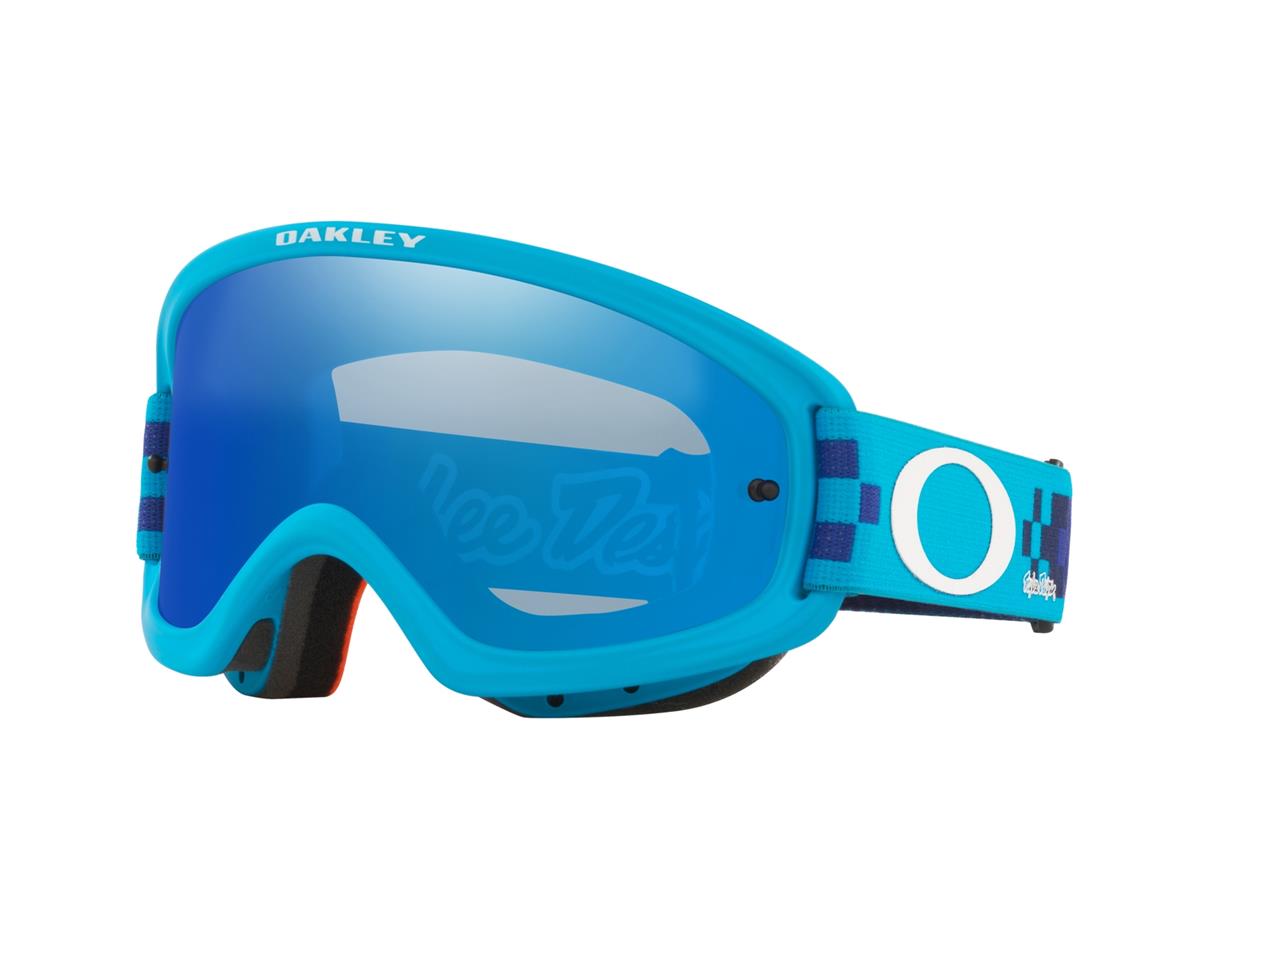 Masque marque Oakley O Frame bleu écran noir Ice Iridium